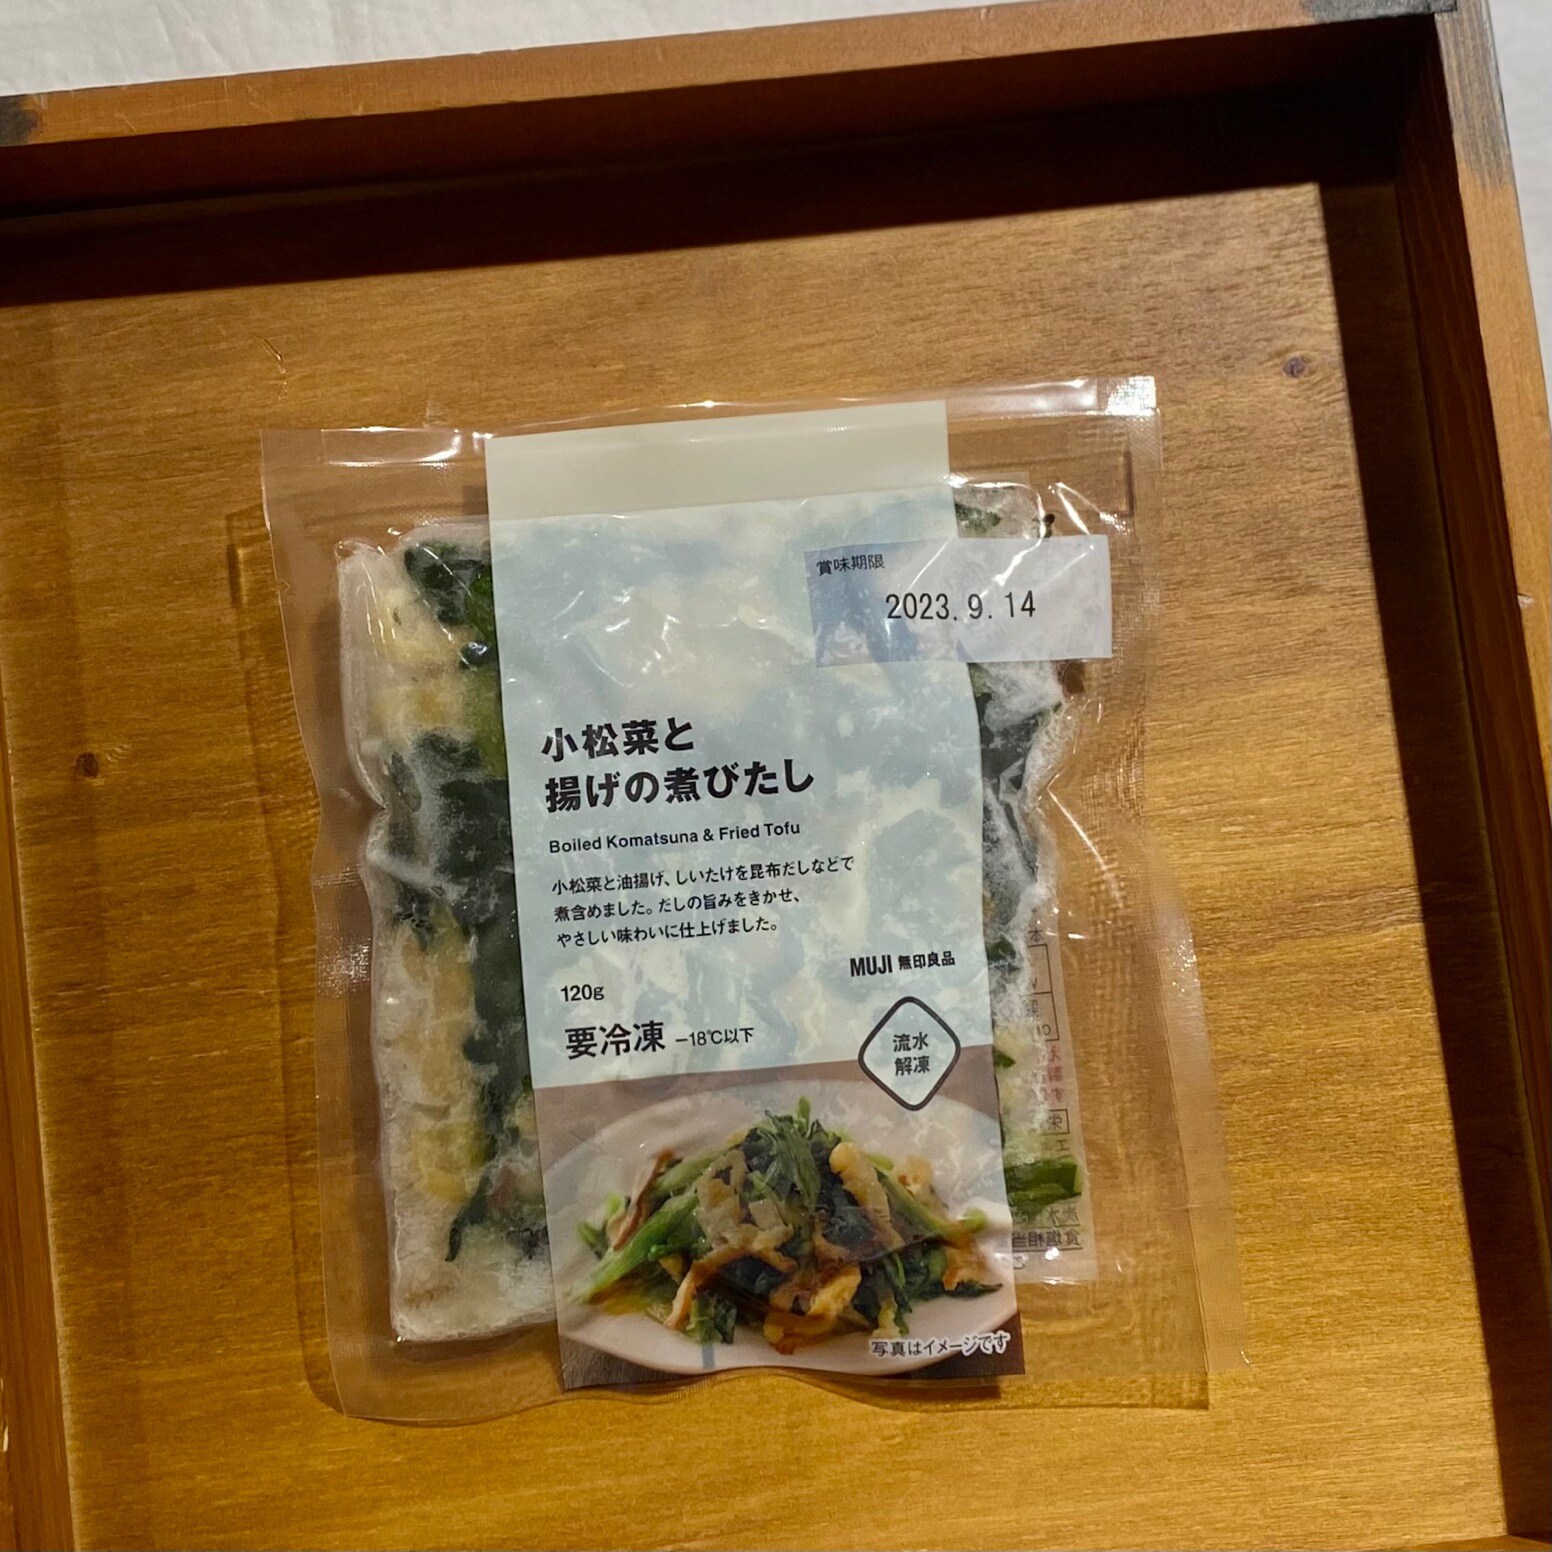 【シエスタハコダテ】冷凍食品で、プラス1品